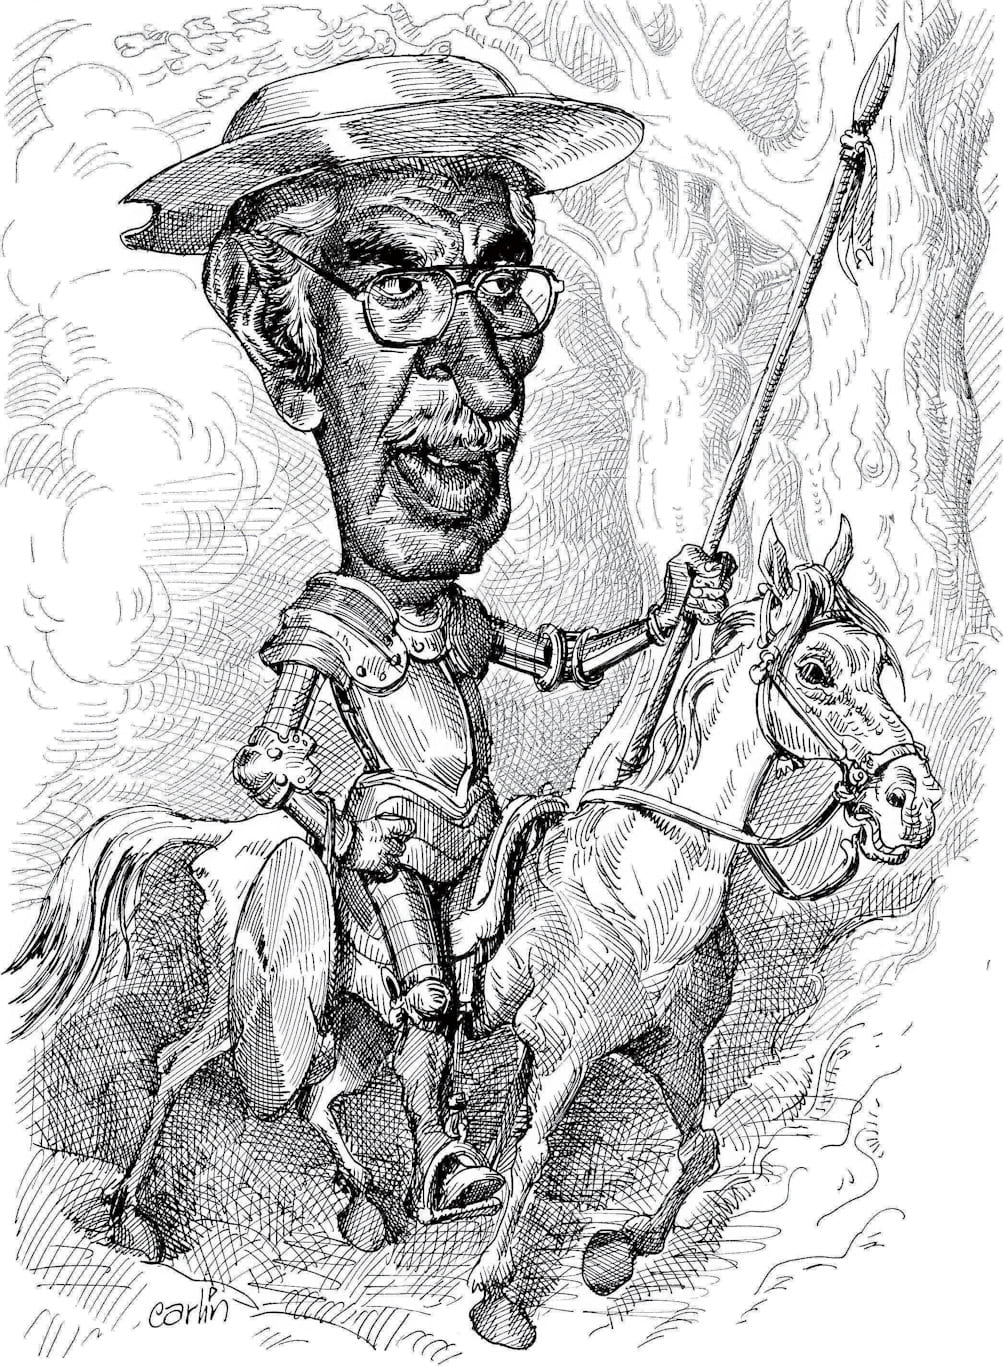 Caricatura de Carlos Tovar, "Carlín".